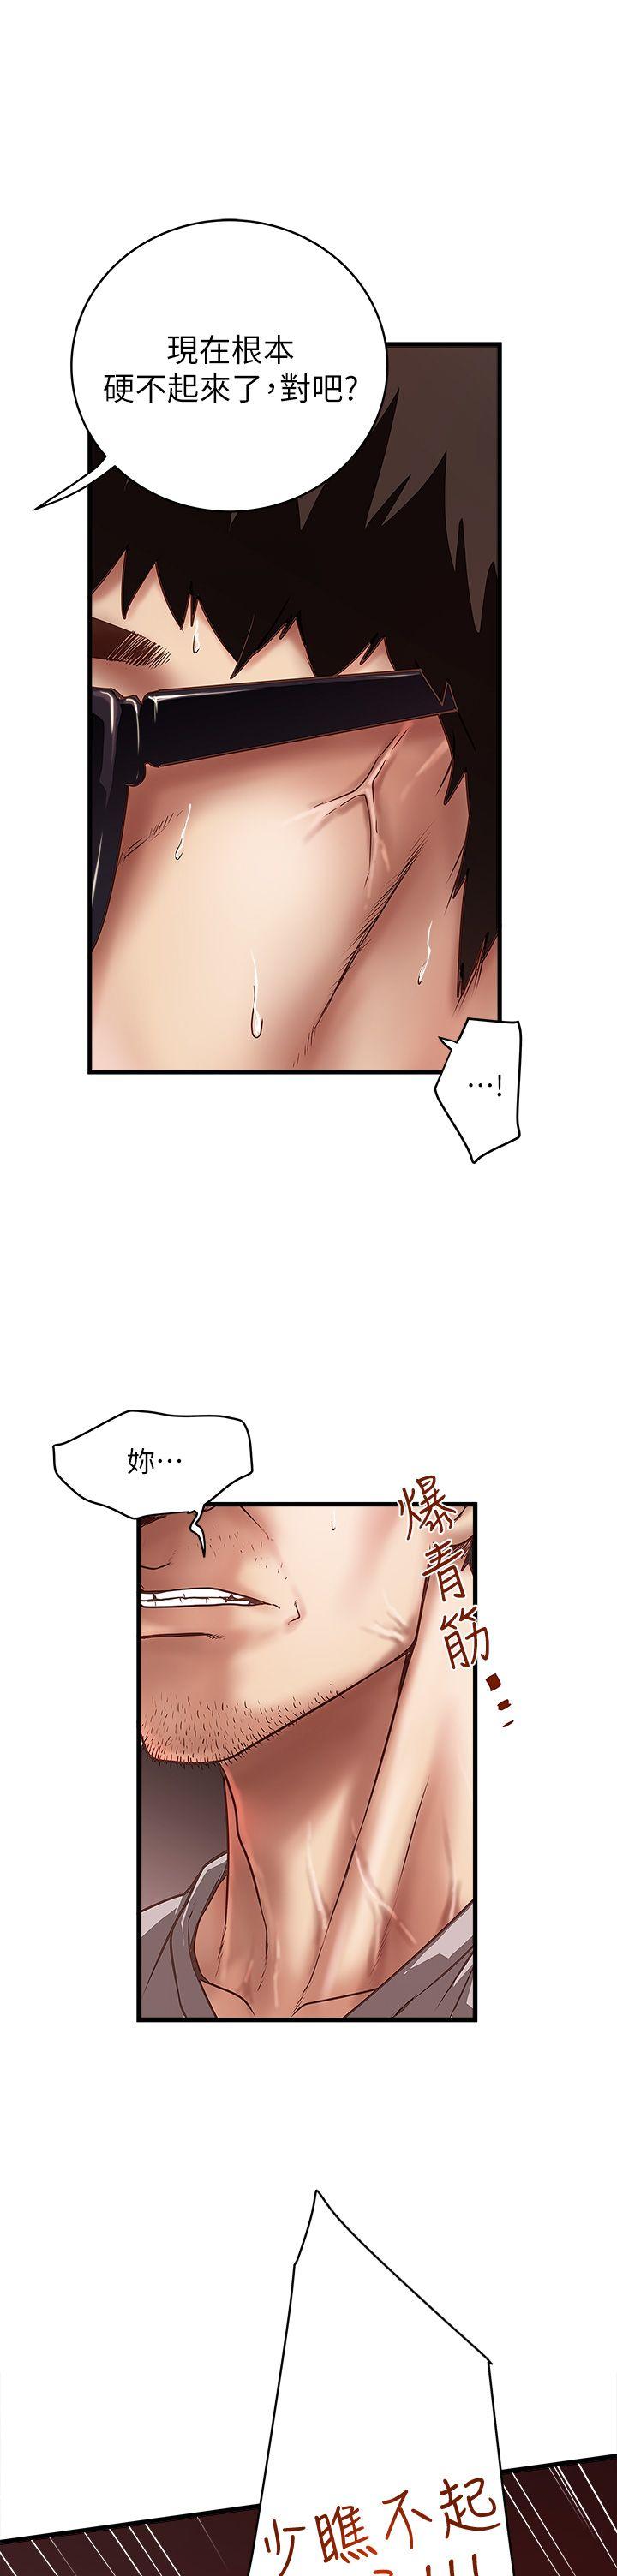 韩国污漫画 下女,初希 第18话-老公反常的床技 5